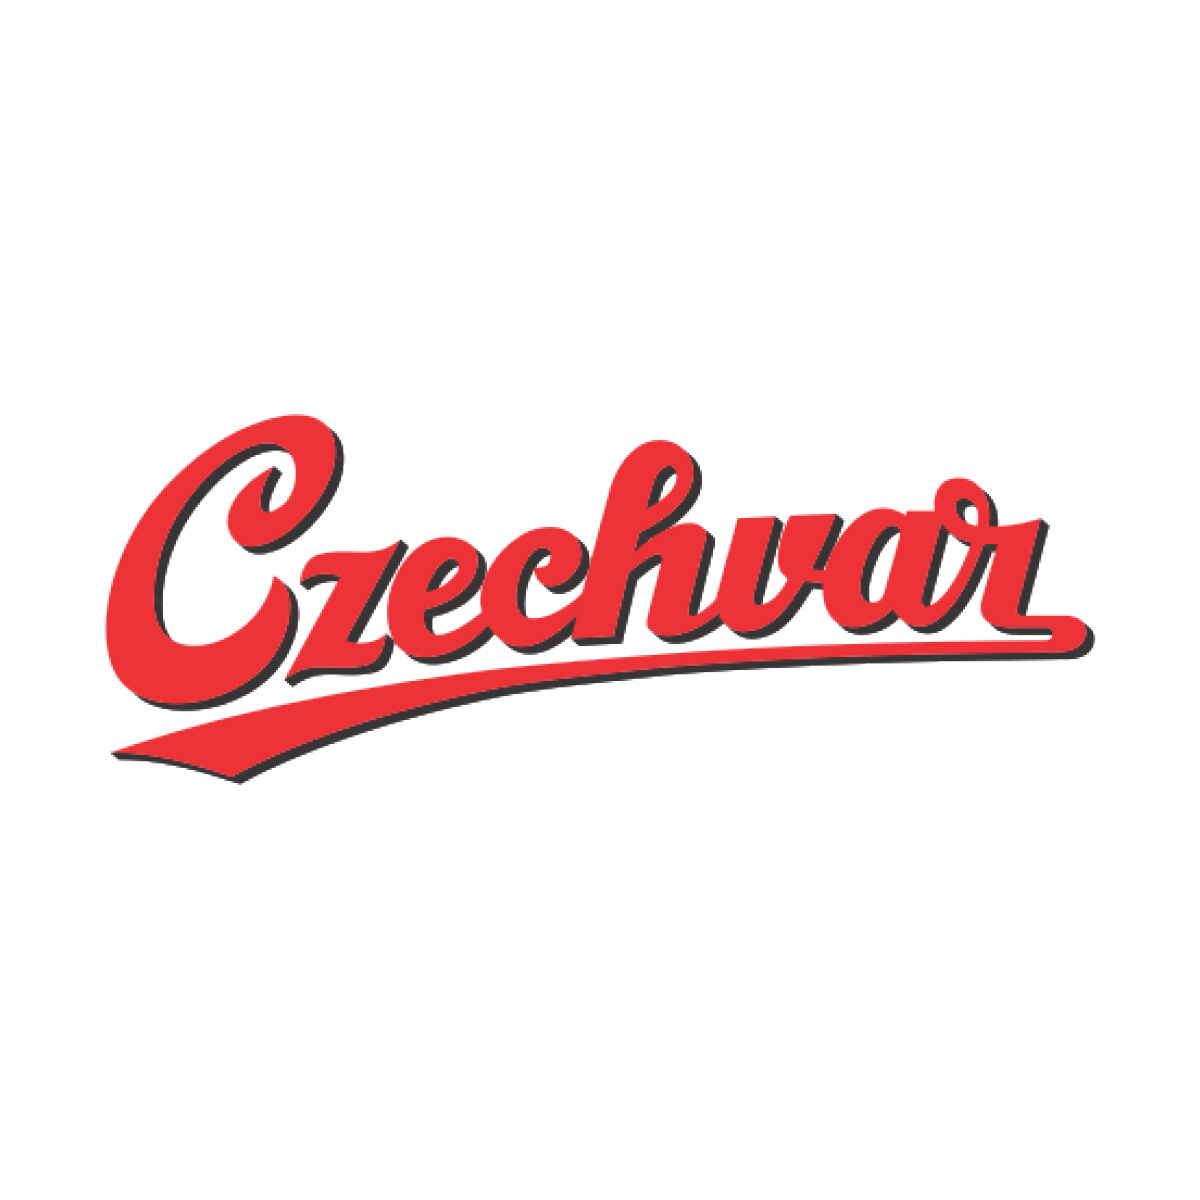 Czechvar